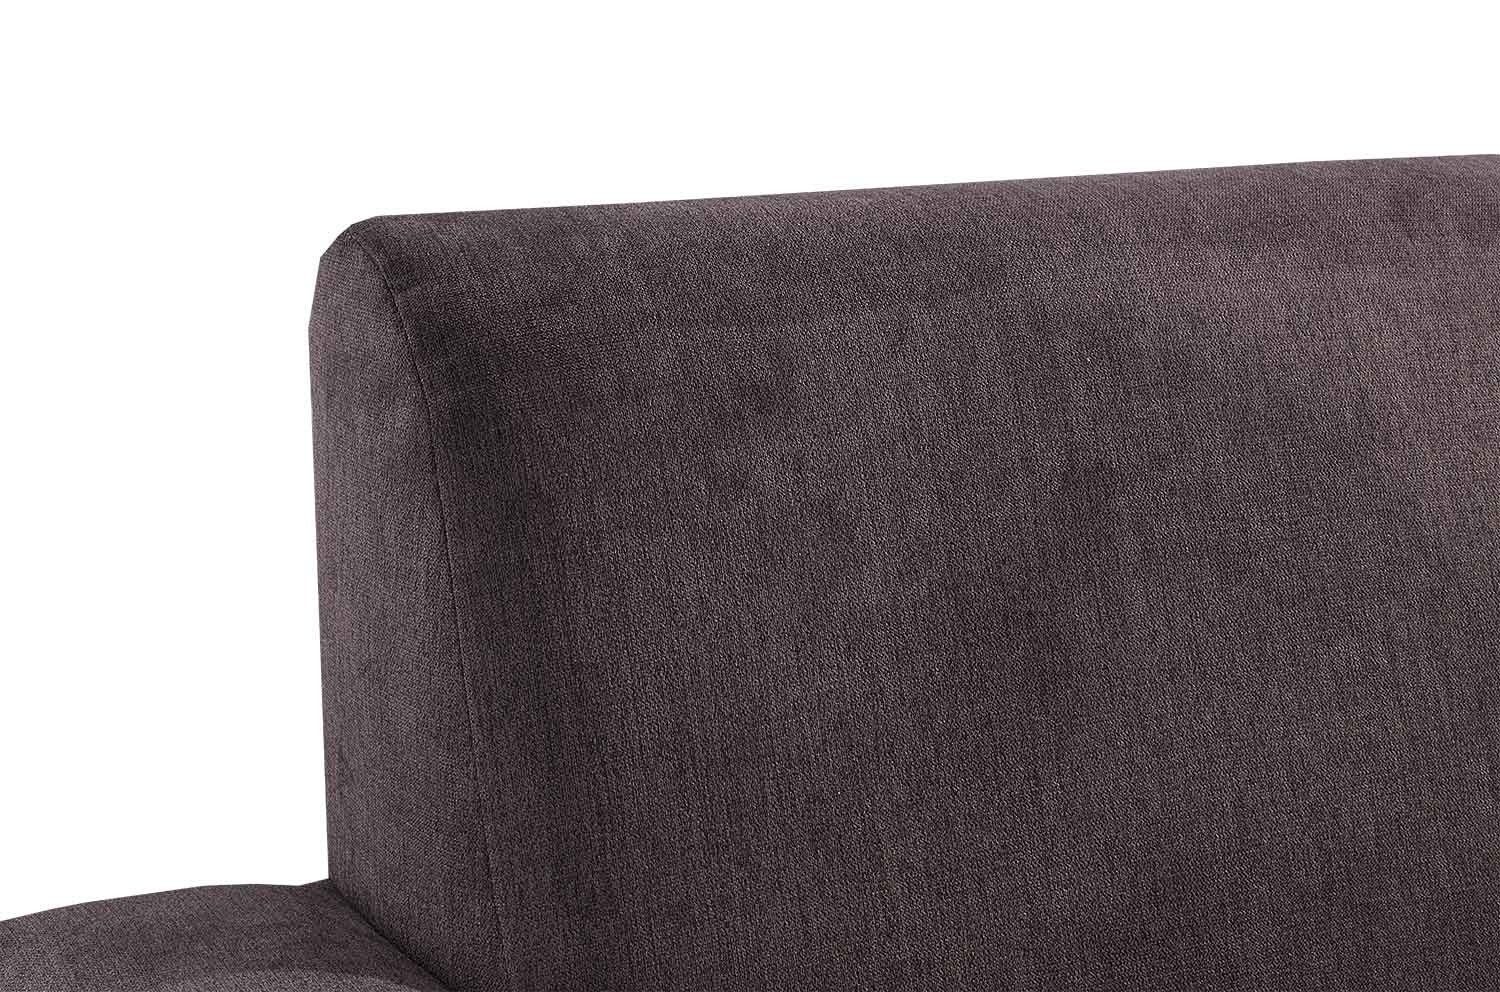 Iwaniccy 3-Sitzer Sofa 2 B JULIA, Dunkelbraun, 201 mit cm, Mikrofaserbezug, Zierkissen